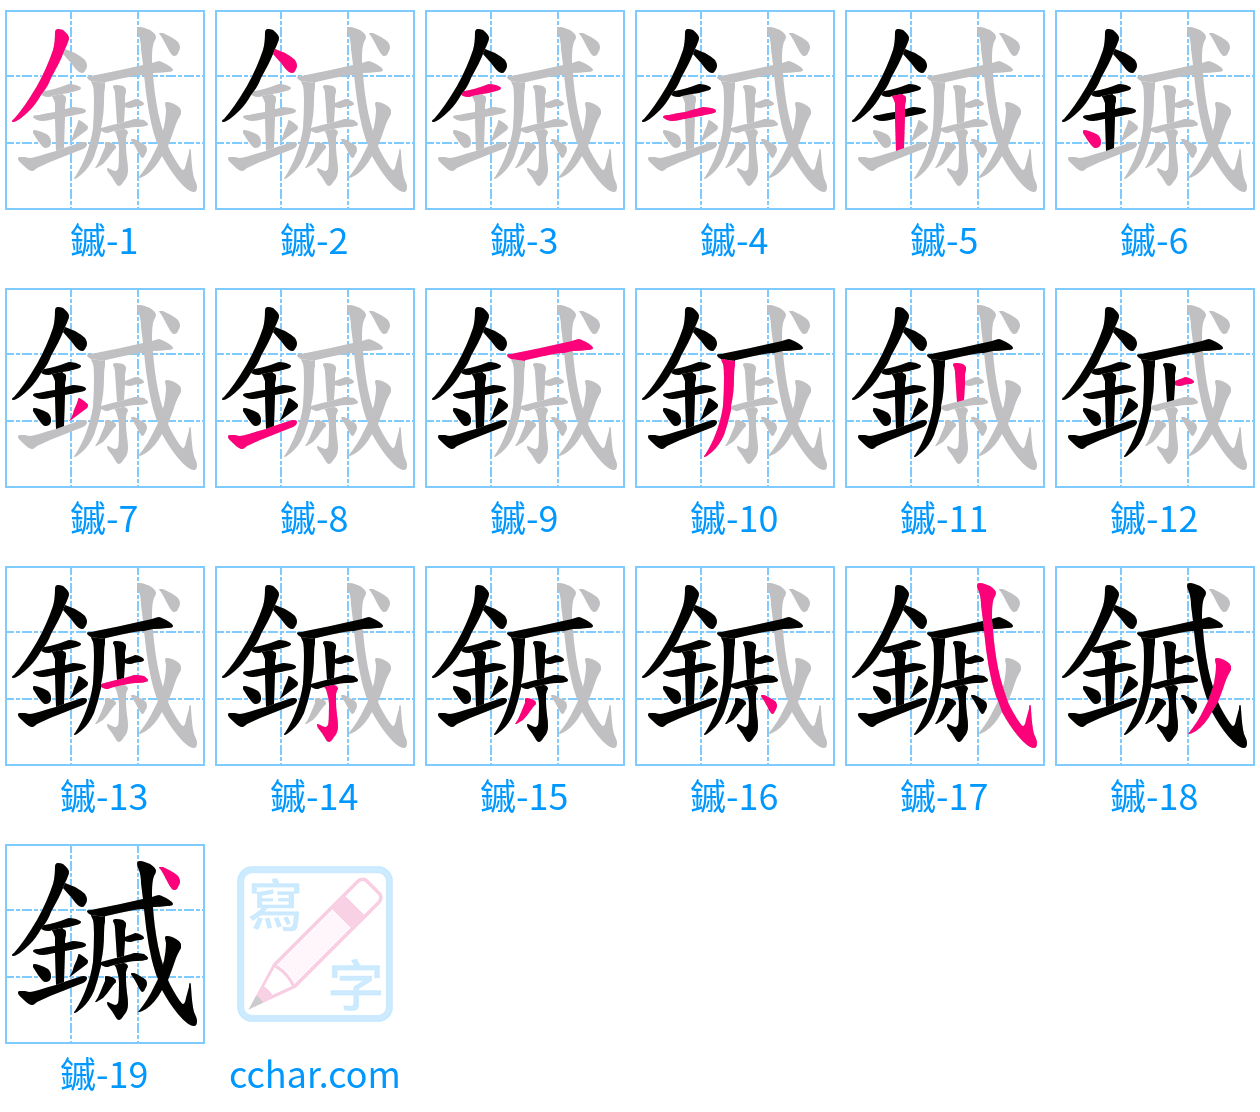 鏚 stroke order step-by-step diagram